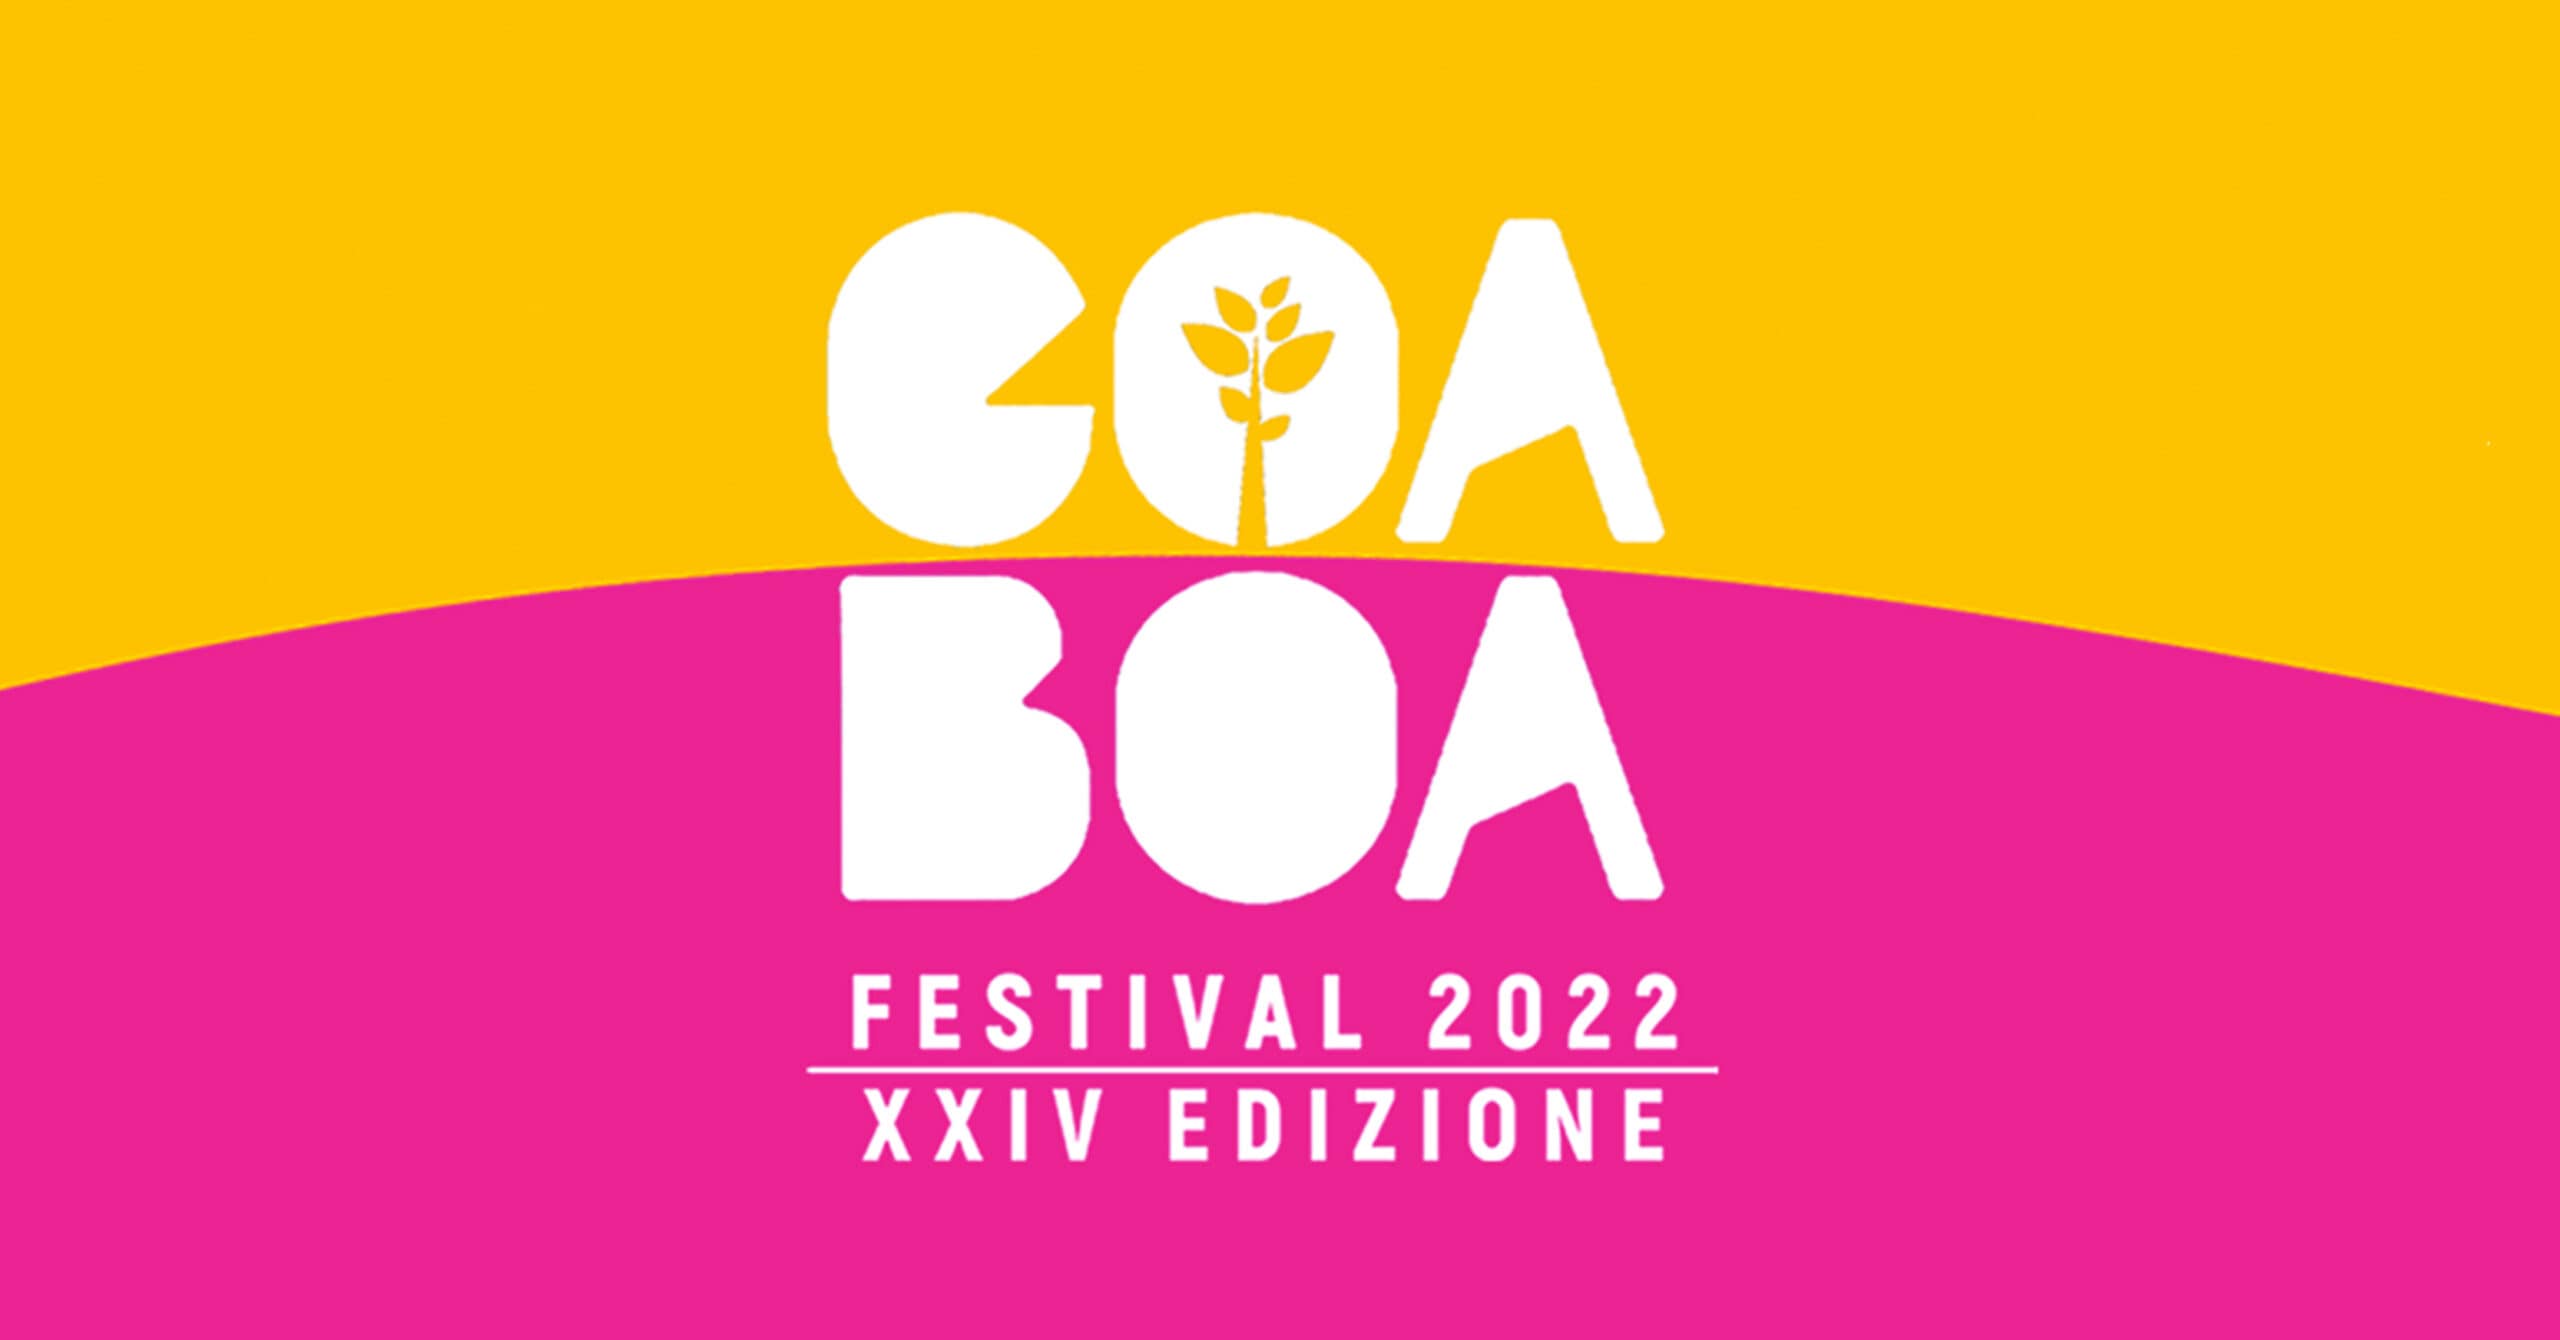 GOA-BOA FESTIVAL 2022 - Porto Antico di Genova